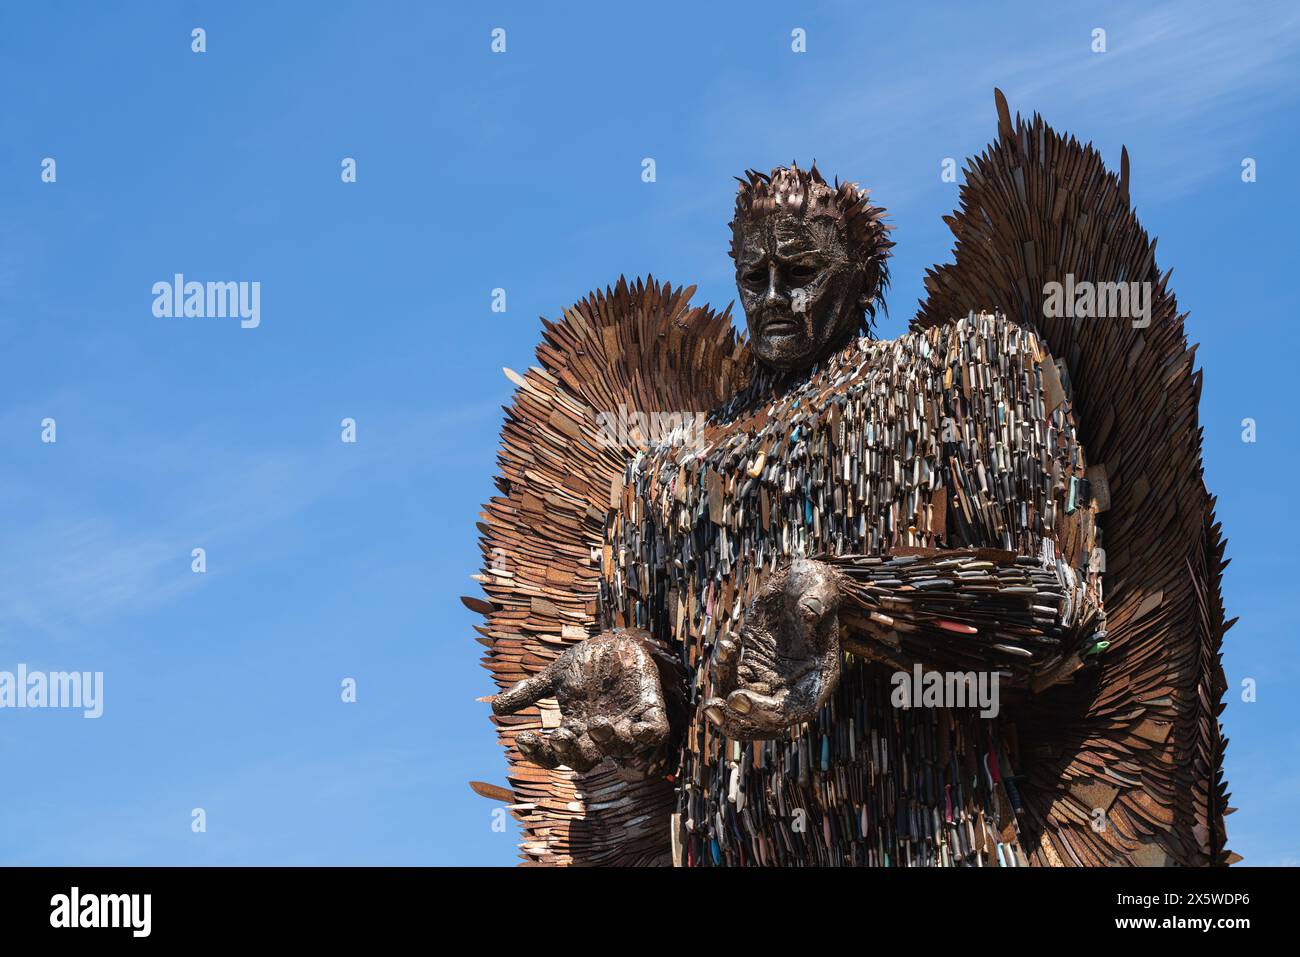 The Knife Angel, une sculpture créée par l'artiste Alfie Bradley et formée de 100 000 couteaux, exposée à Weston-super-Mare, North Somerset. Également connu sous le nom de Monument national contre la violence et l'agression, l'ange a été créé pour souligner le crime de couteau au Royaume-Uni. Banque D'Images